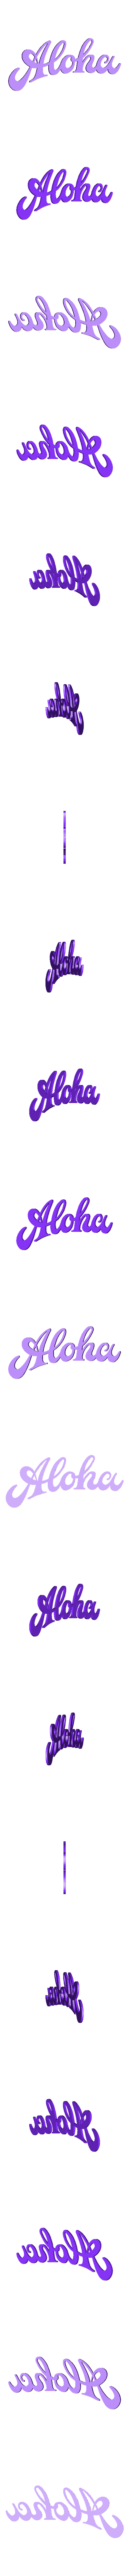 Aloha Sign.STL Download free STL file Aloha Sign • 3D printing design, edditive